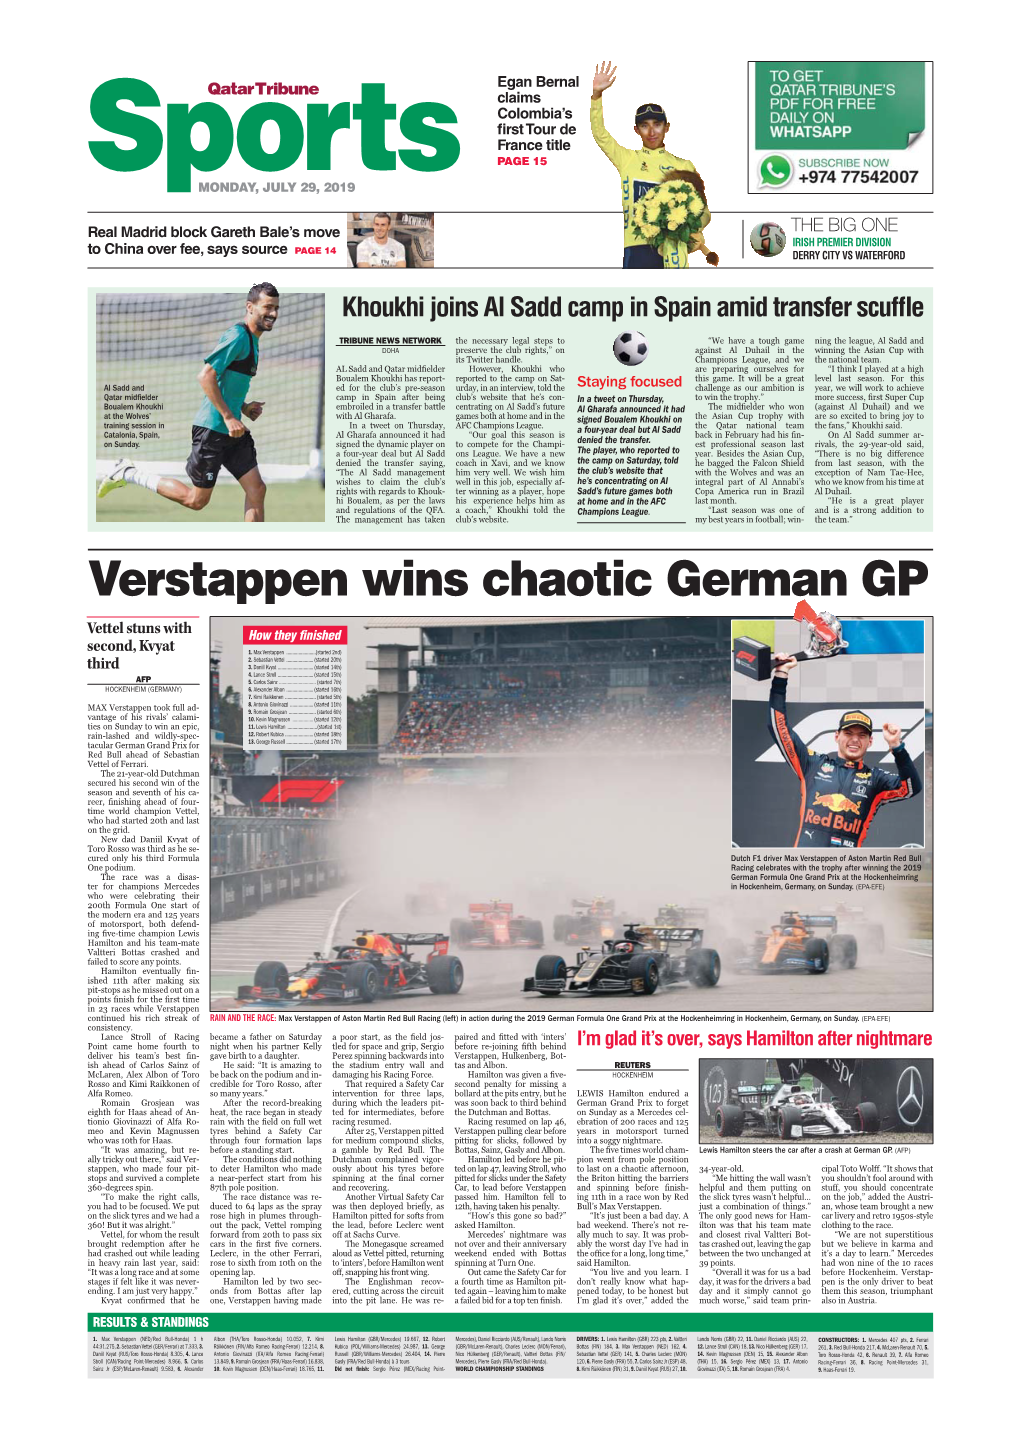 Verstappen Wins Chaotic German GP